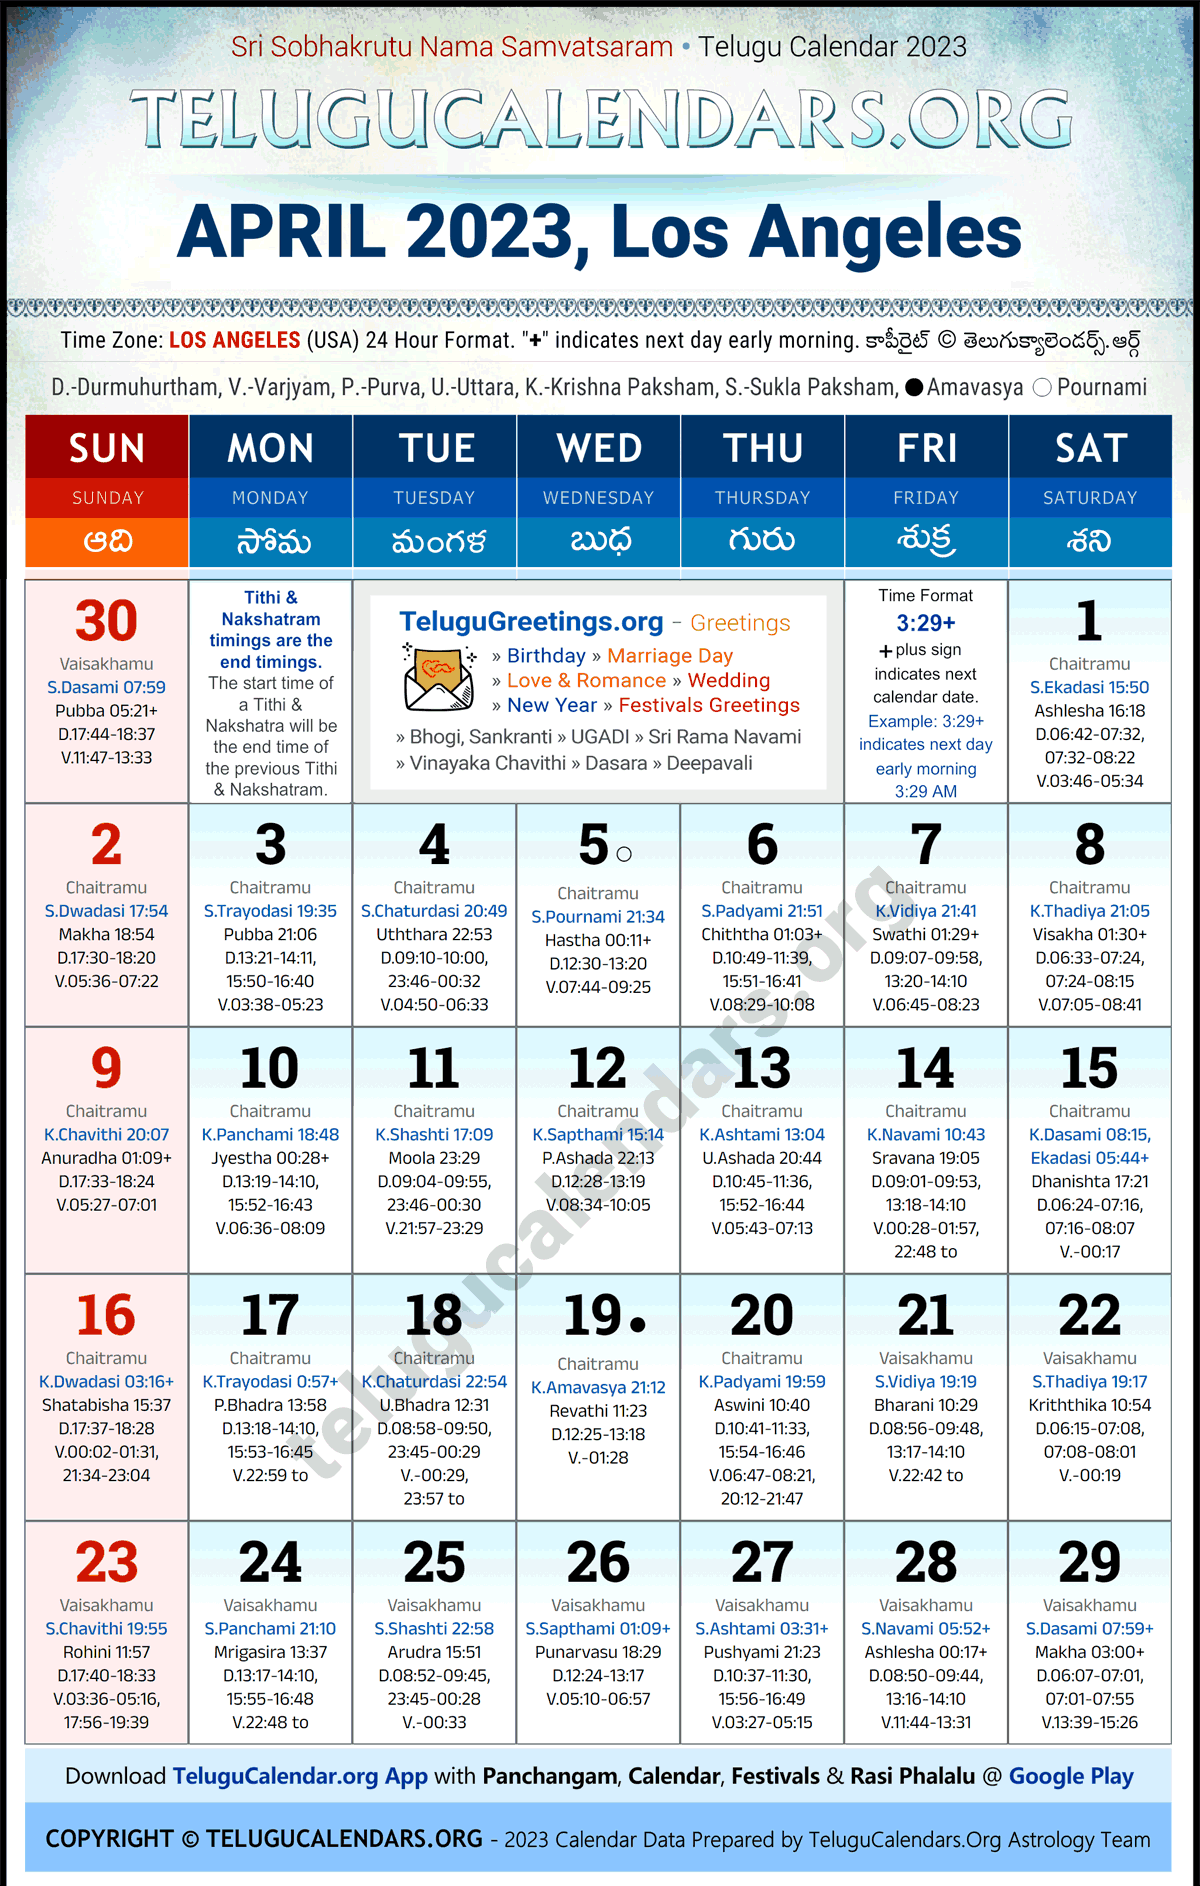 Telugu Calendar 2023 April Festivals for Los Angeles